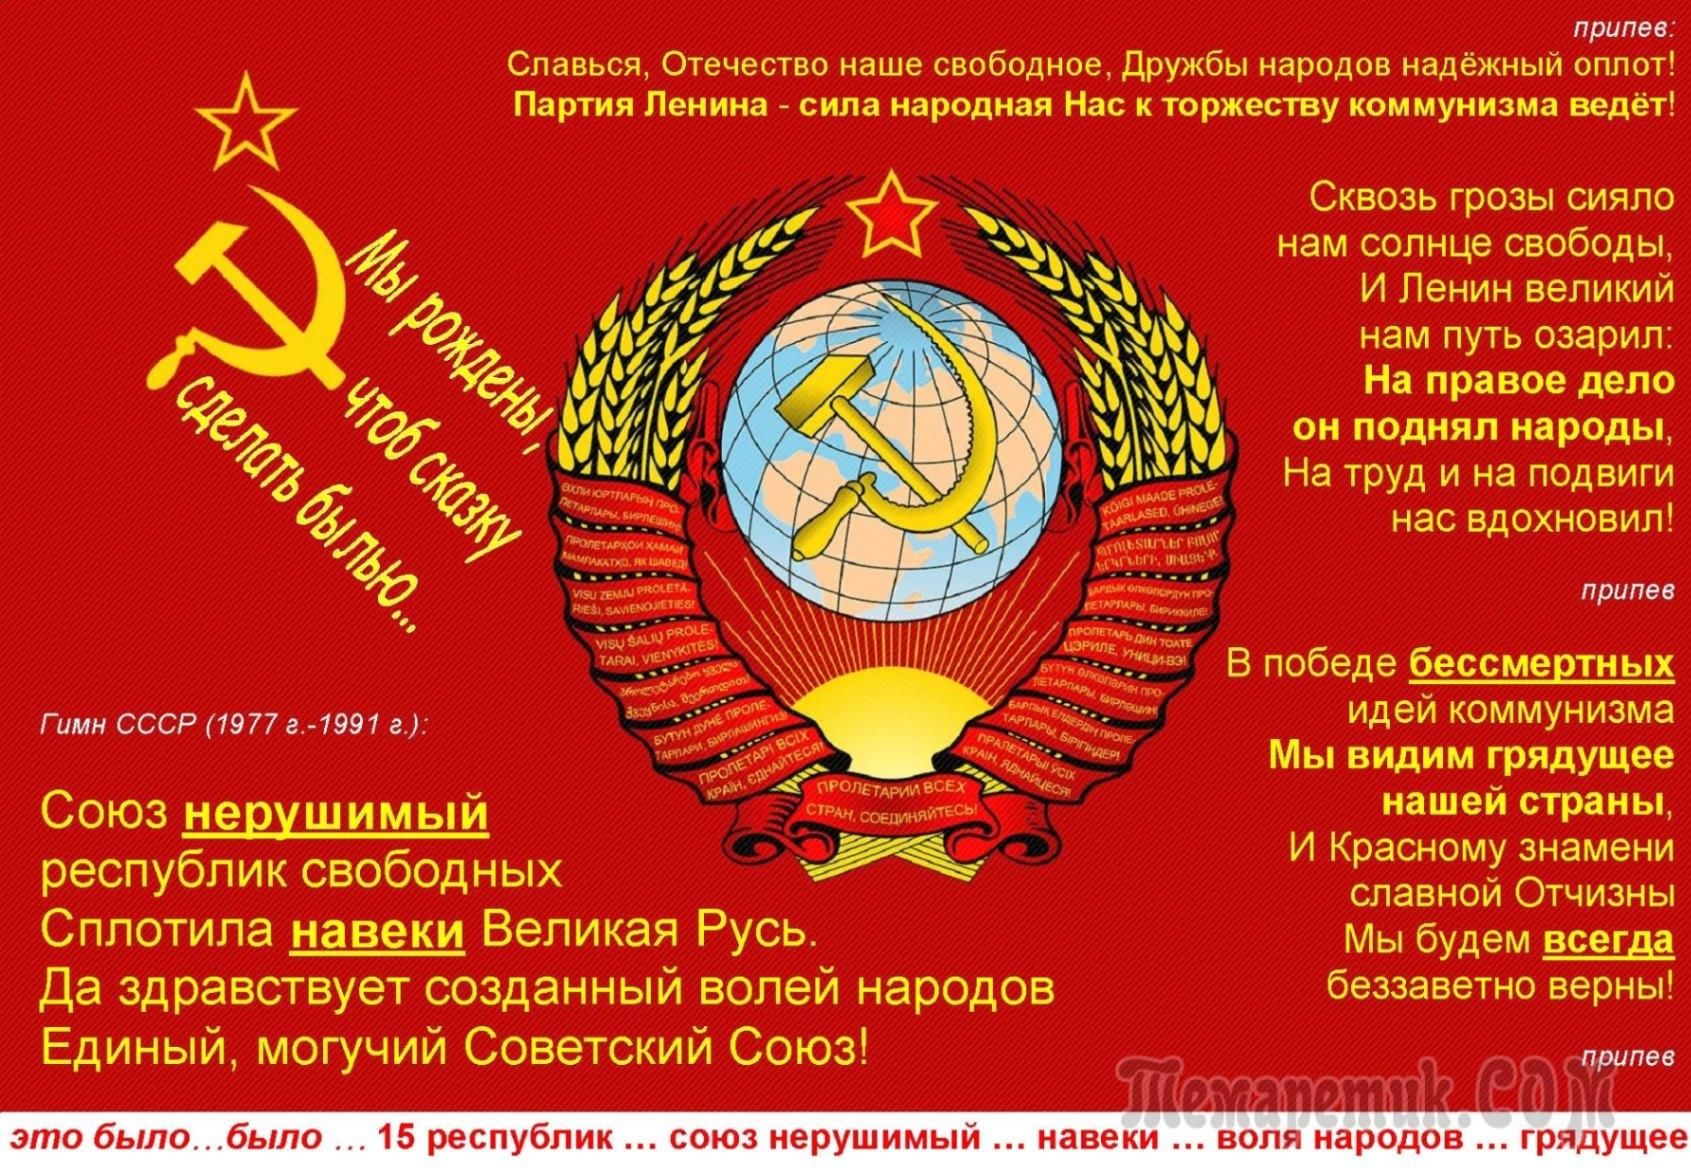 Дата распада советского